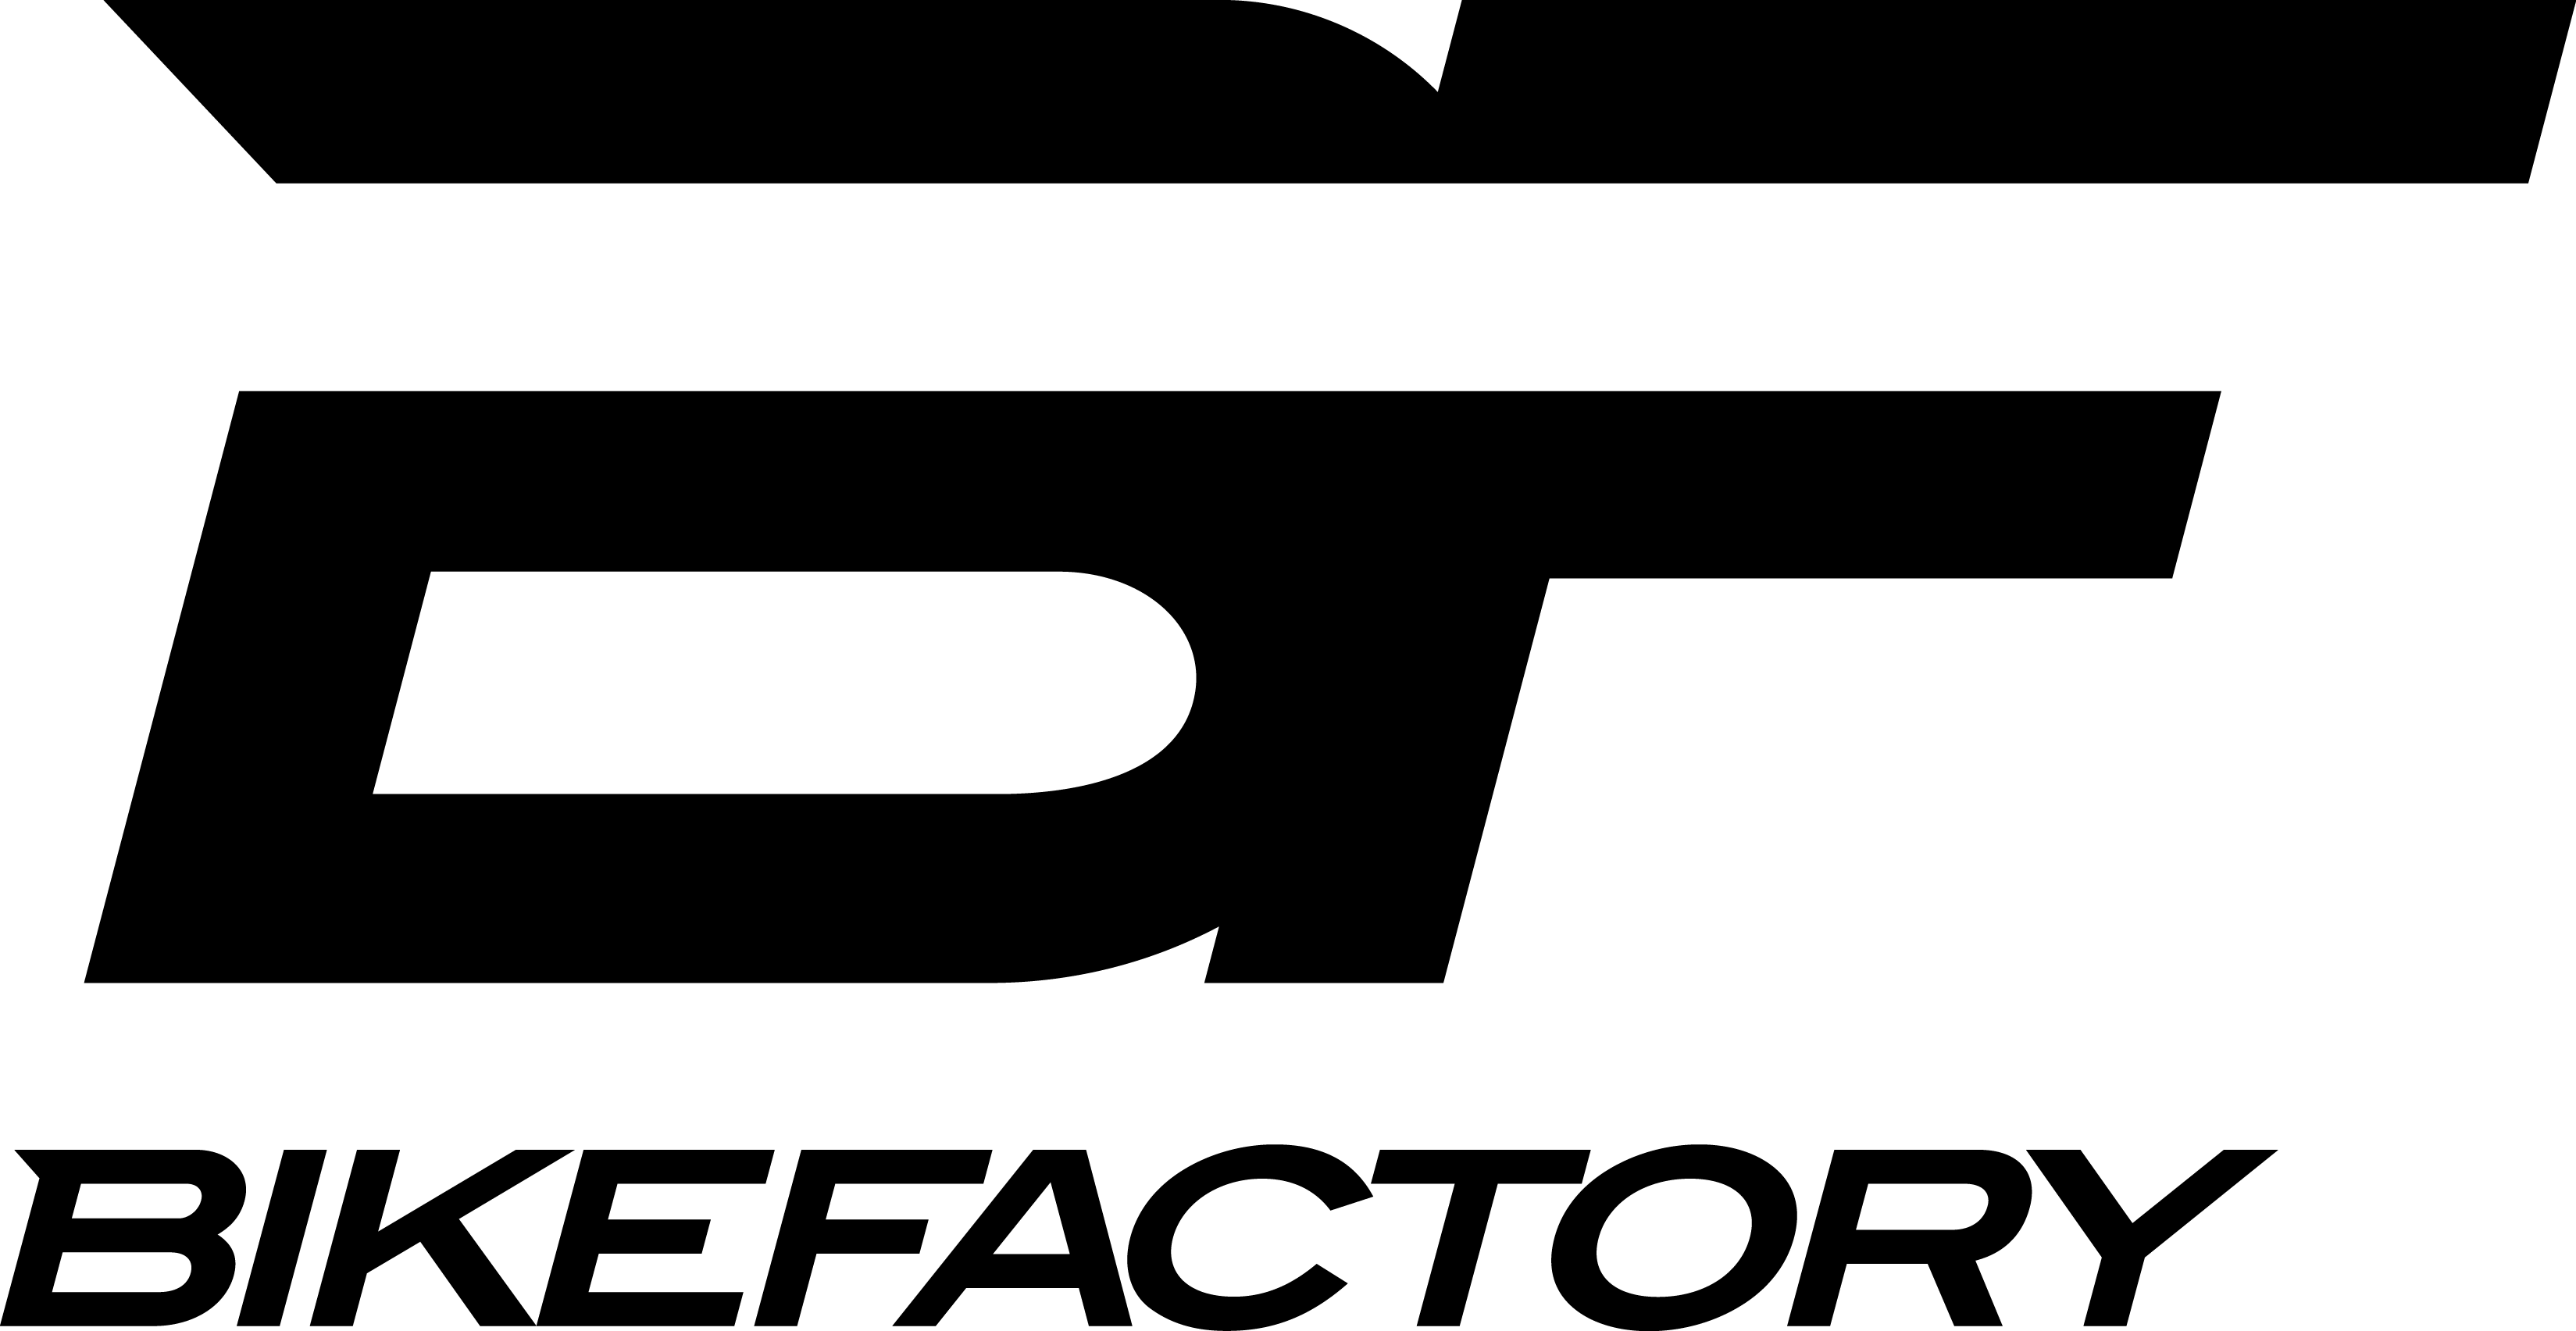 Bikefactory logo final black logo